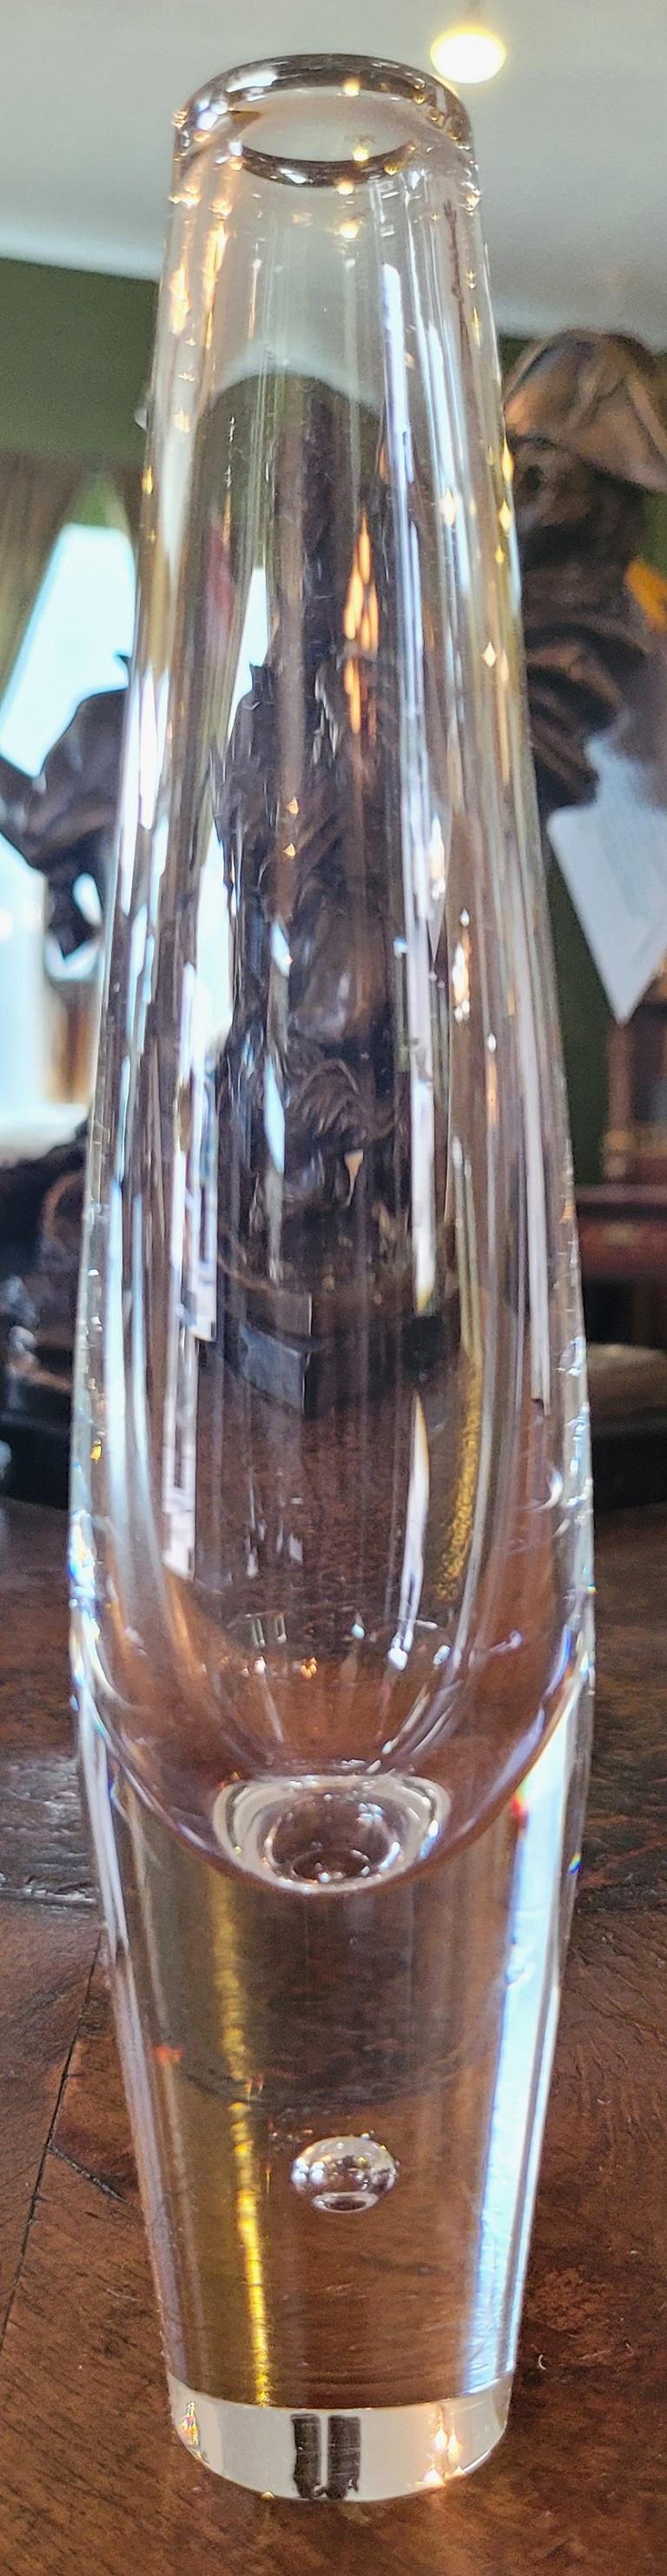 Nous vous présentons un adorable vase Steuben en forme de goutte de 8,5 pouces, datant du milieu du siècle dernier.

Making Works par la célèbre et très recherchée 